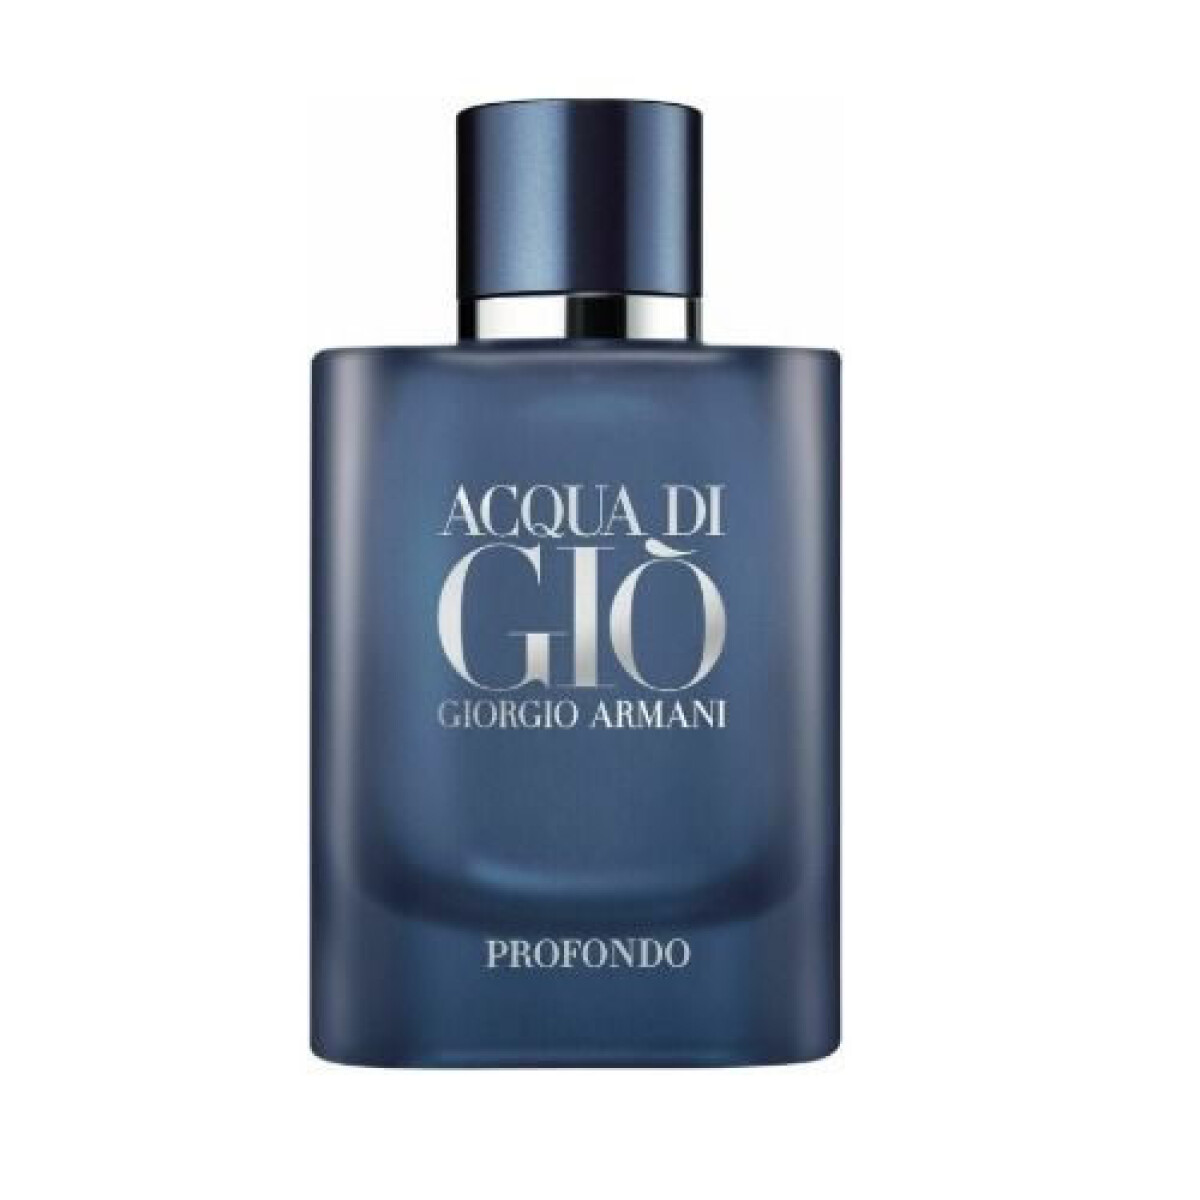 Perfume Giorgio Armani ACQUA DI GIO PROFONDO EDP 75 ml 